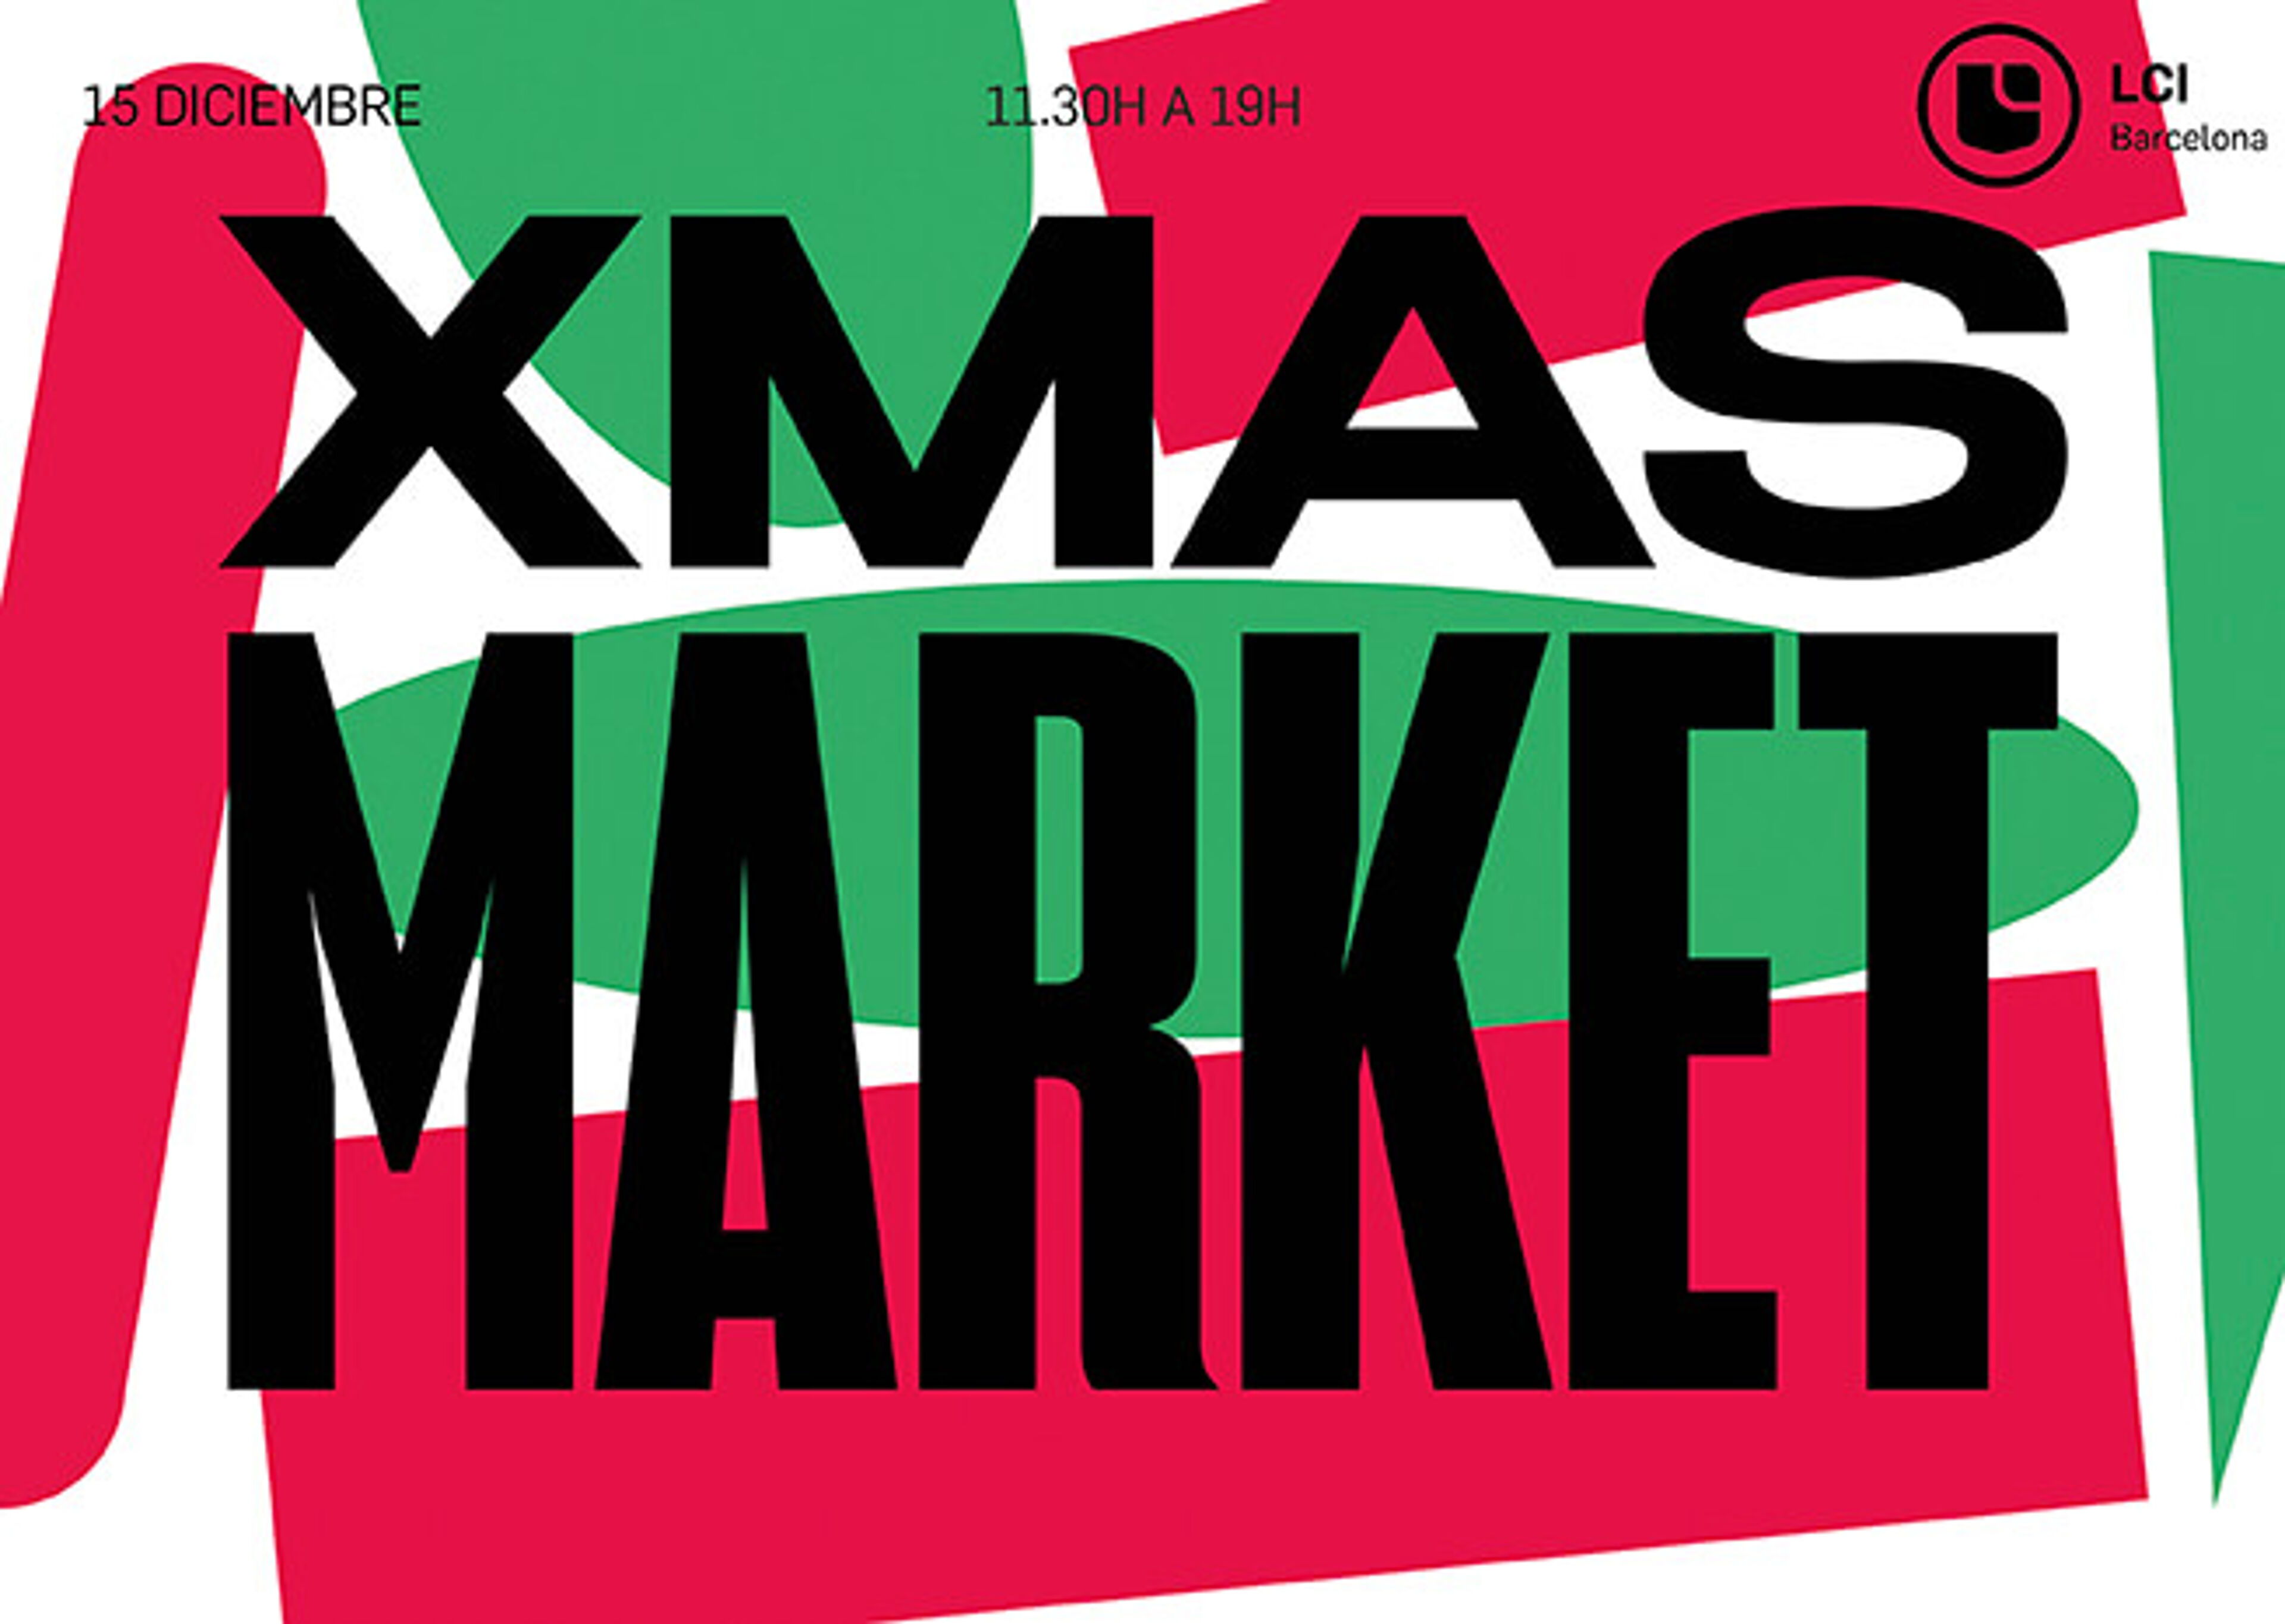 Cartel llamativo con 'XMAS MARKET' en letras grandes en rojo y verde, anunciando un evento el 15 de diciembre de 11.30h a 19h en LCI Barcelona.